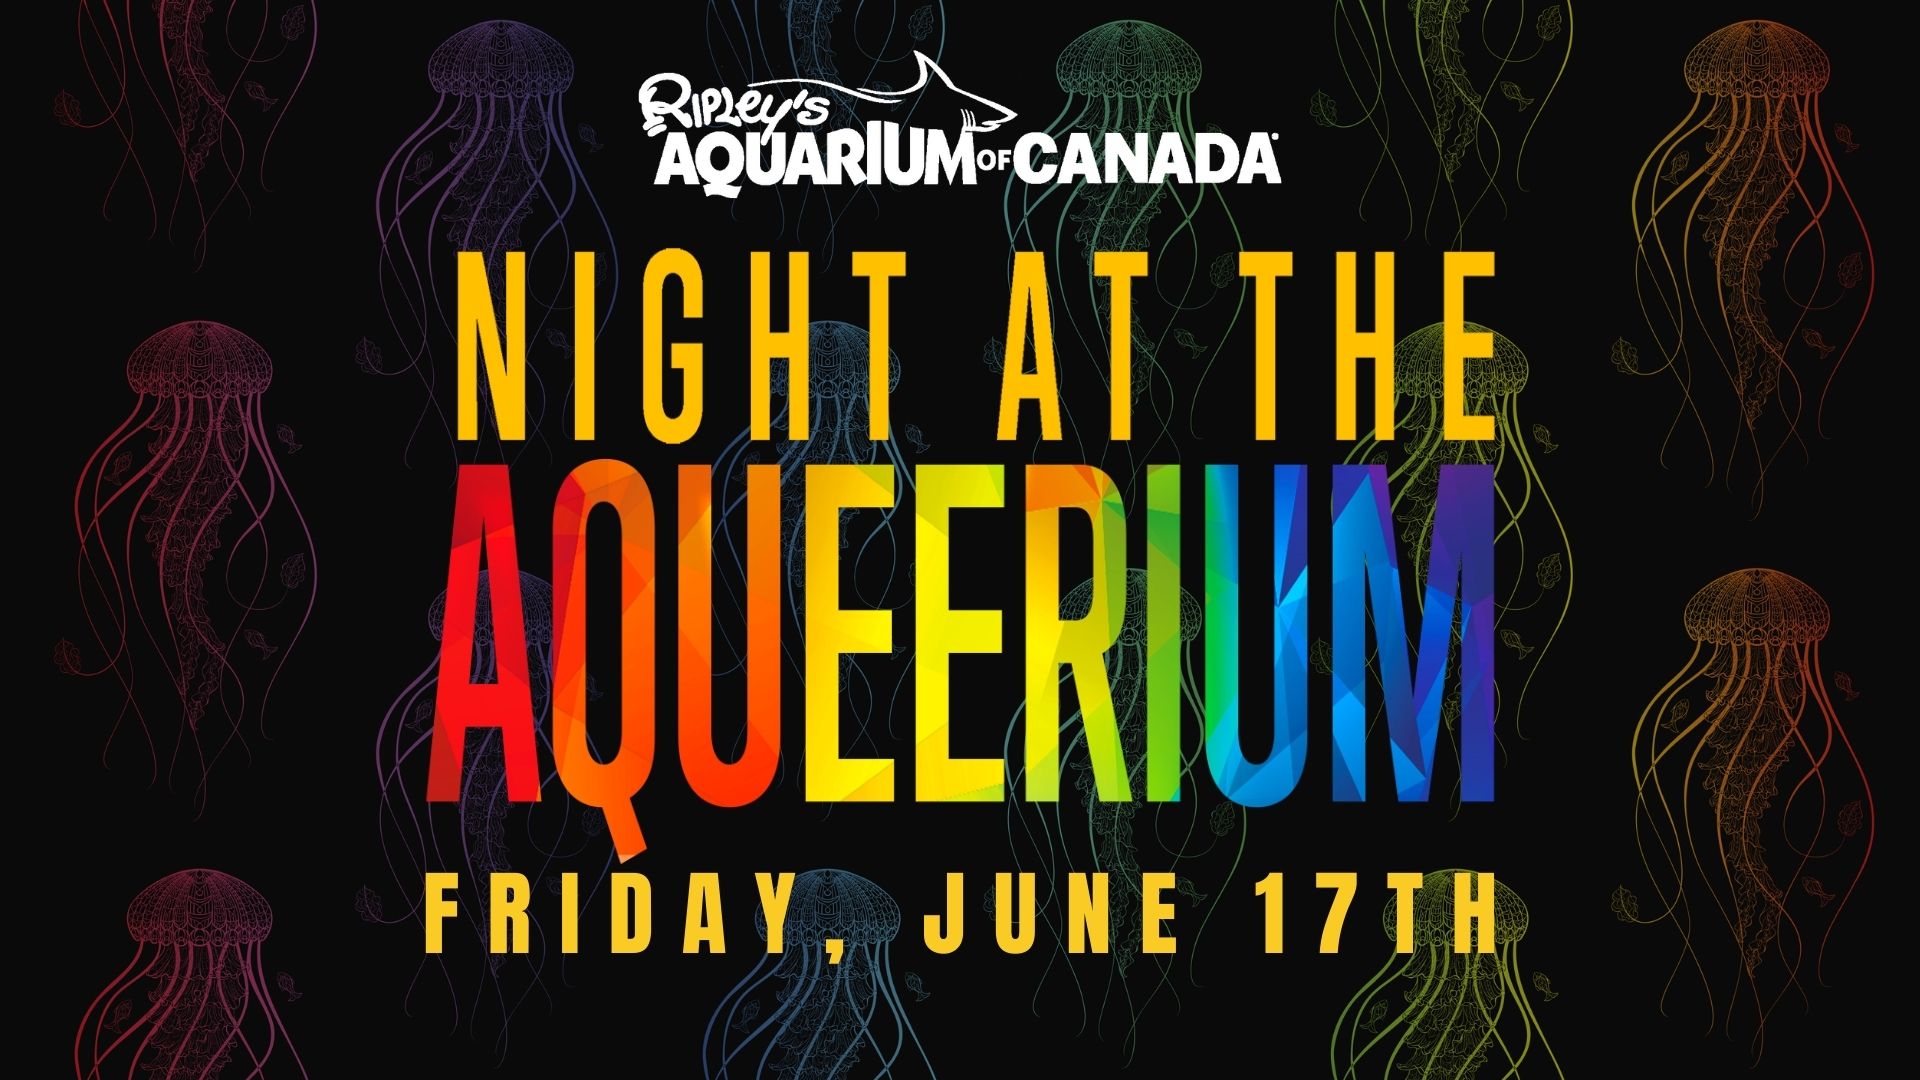 The Night at the Aqueerium Event